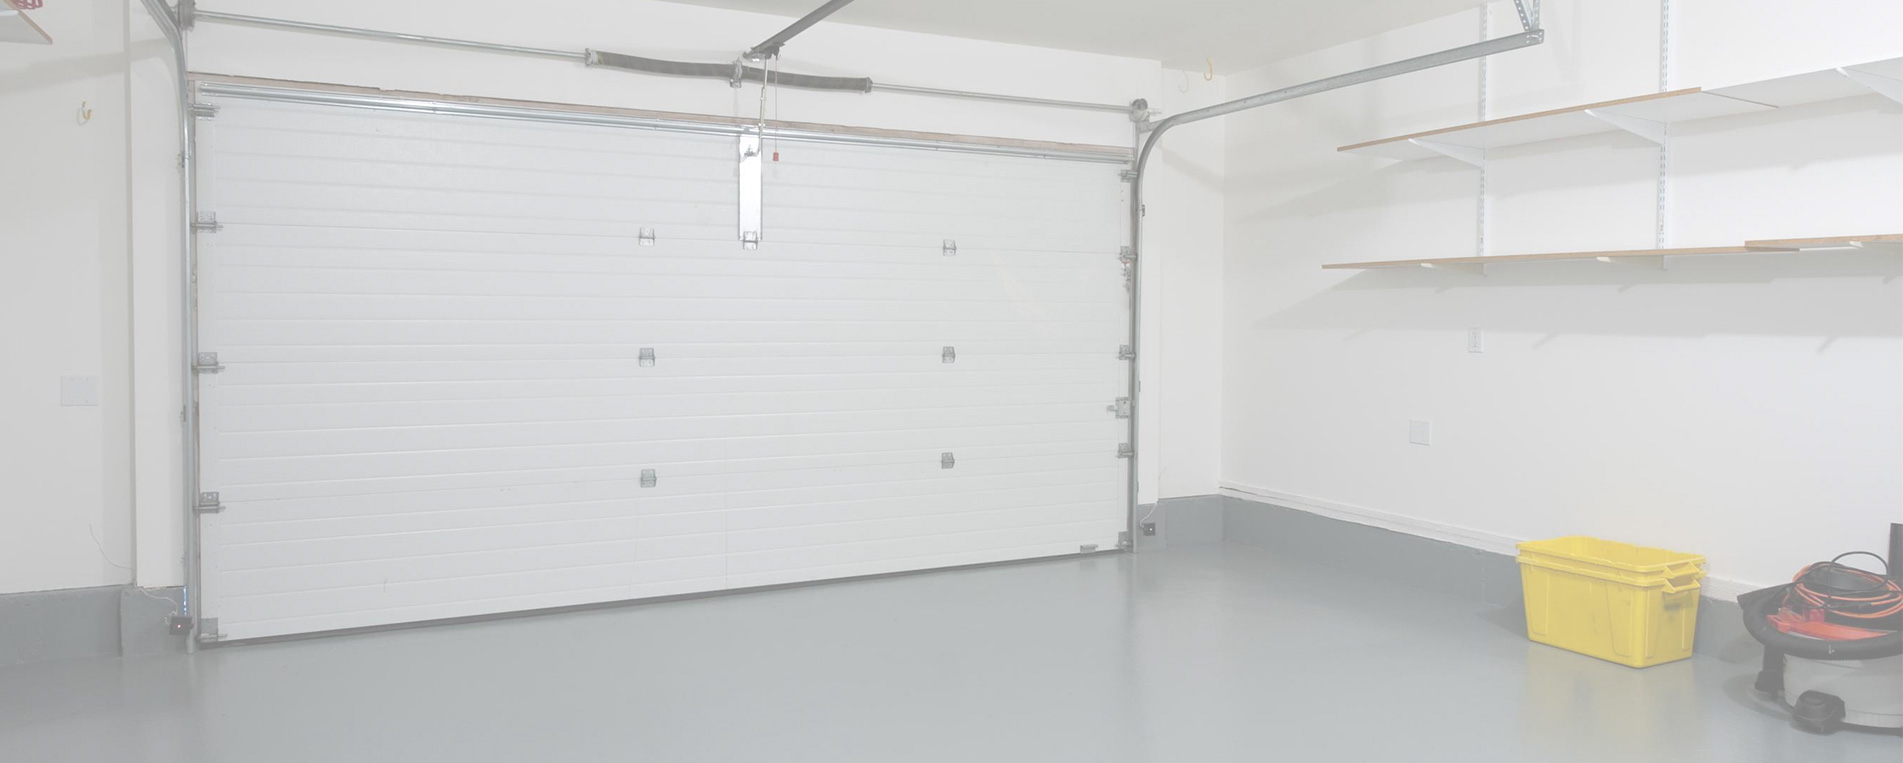 LiftMaster Garage Door Opener Troubleshooting, Enderly Park